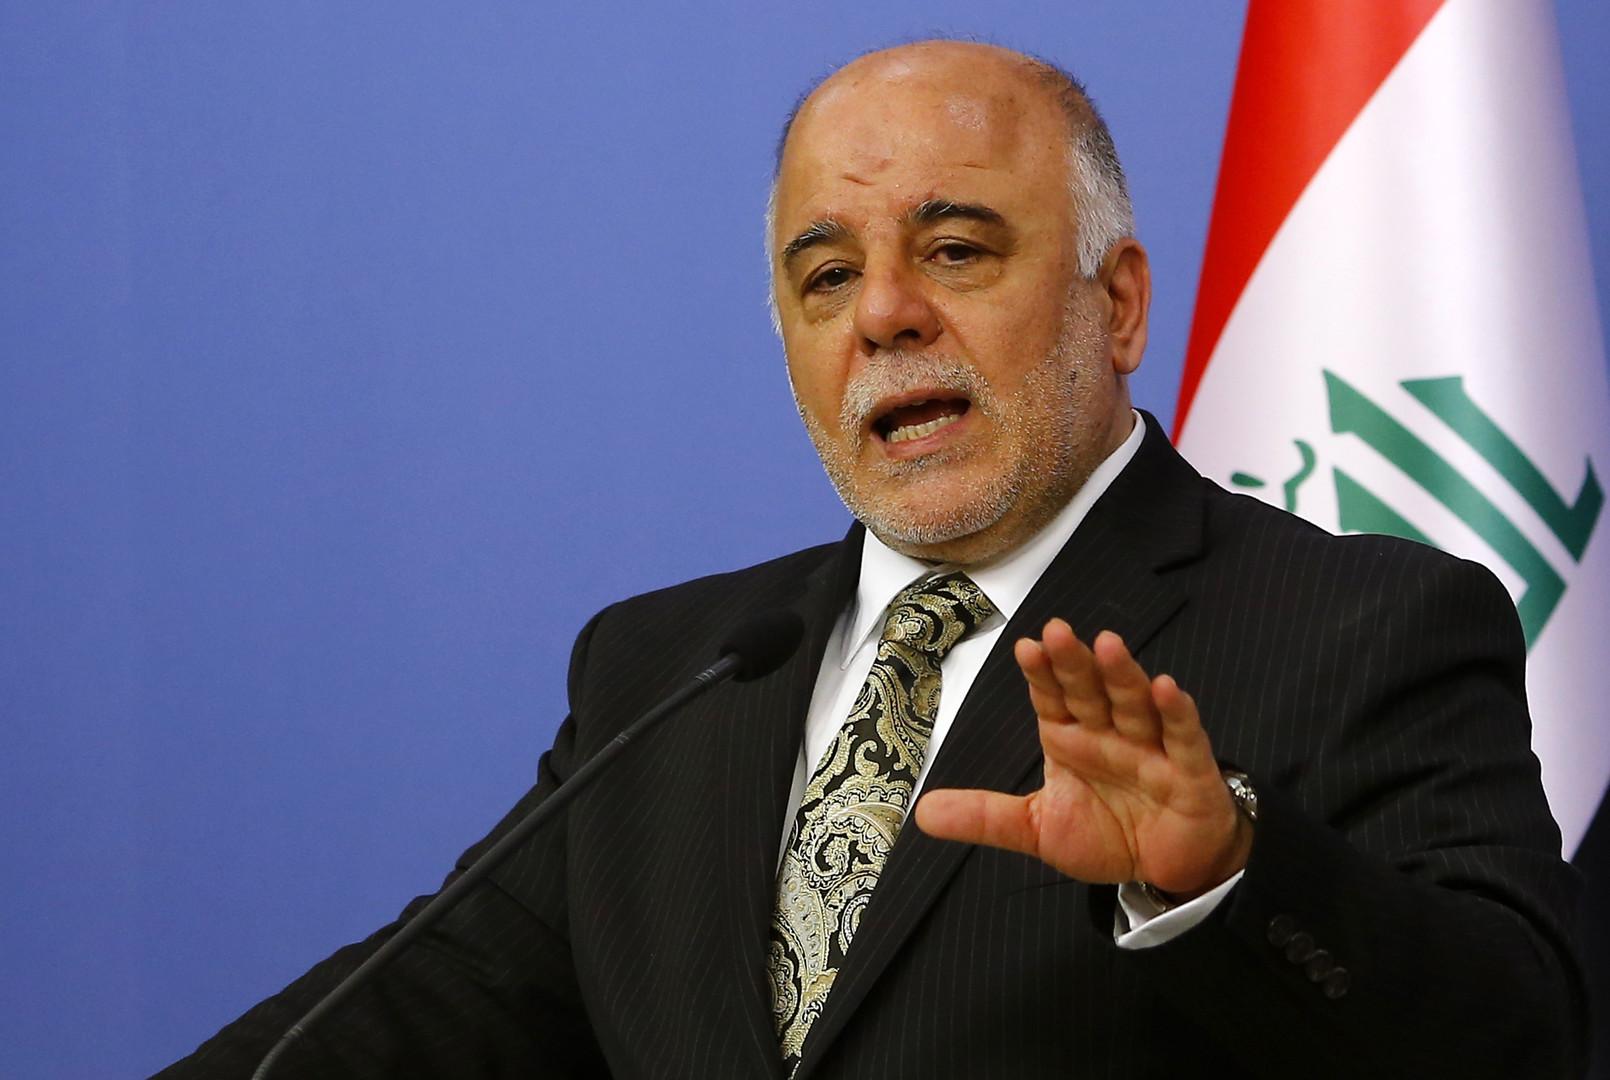 البرلمان العراقي يمهل العبادي 3 أيام لتقديم حكومة جديدة